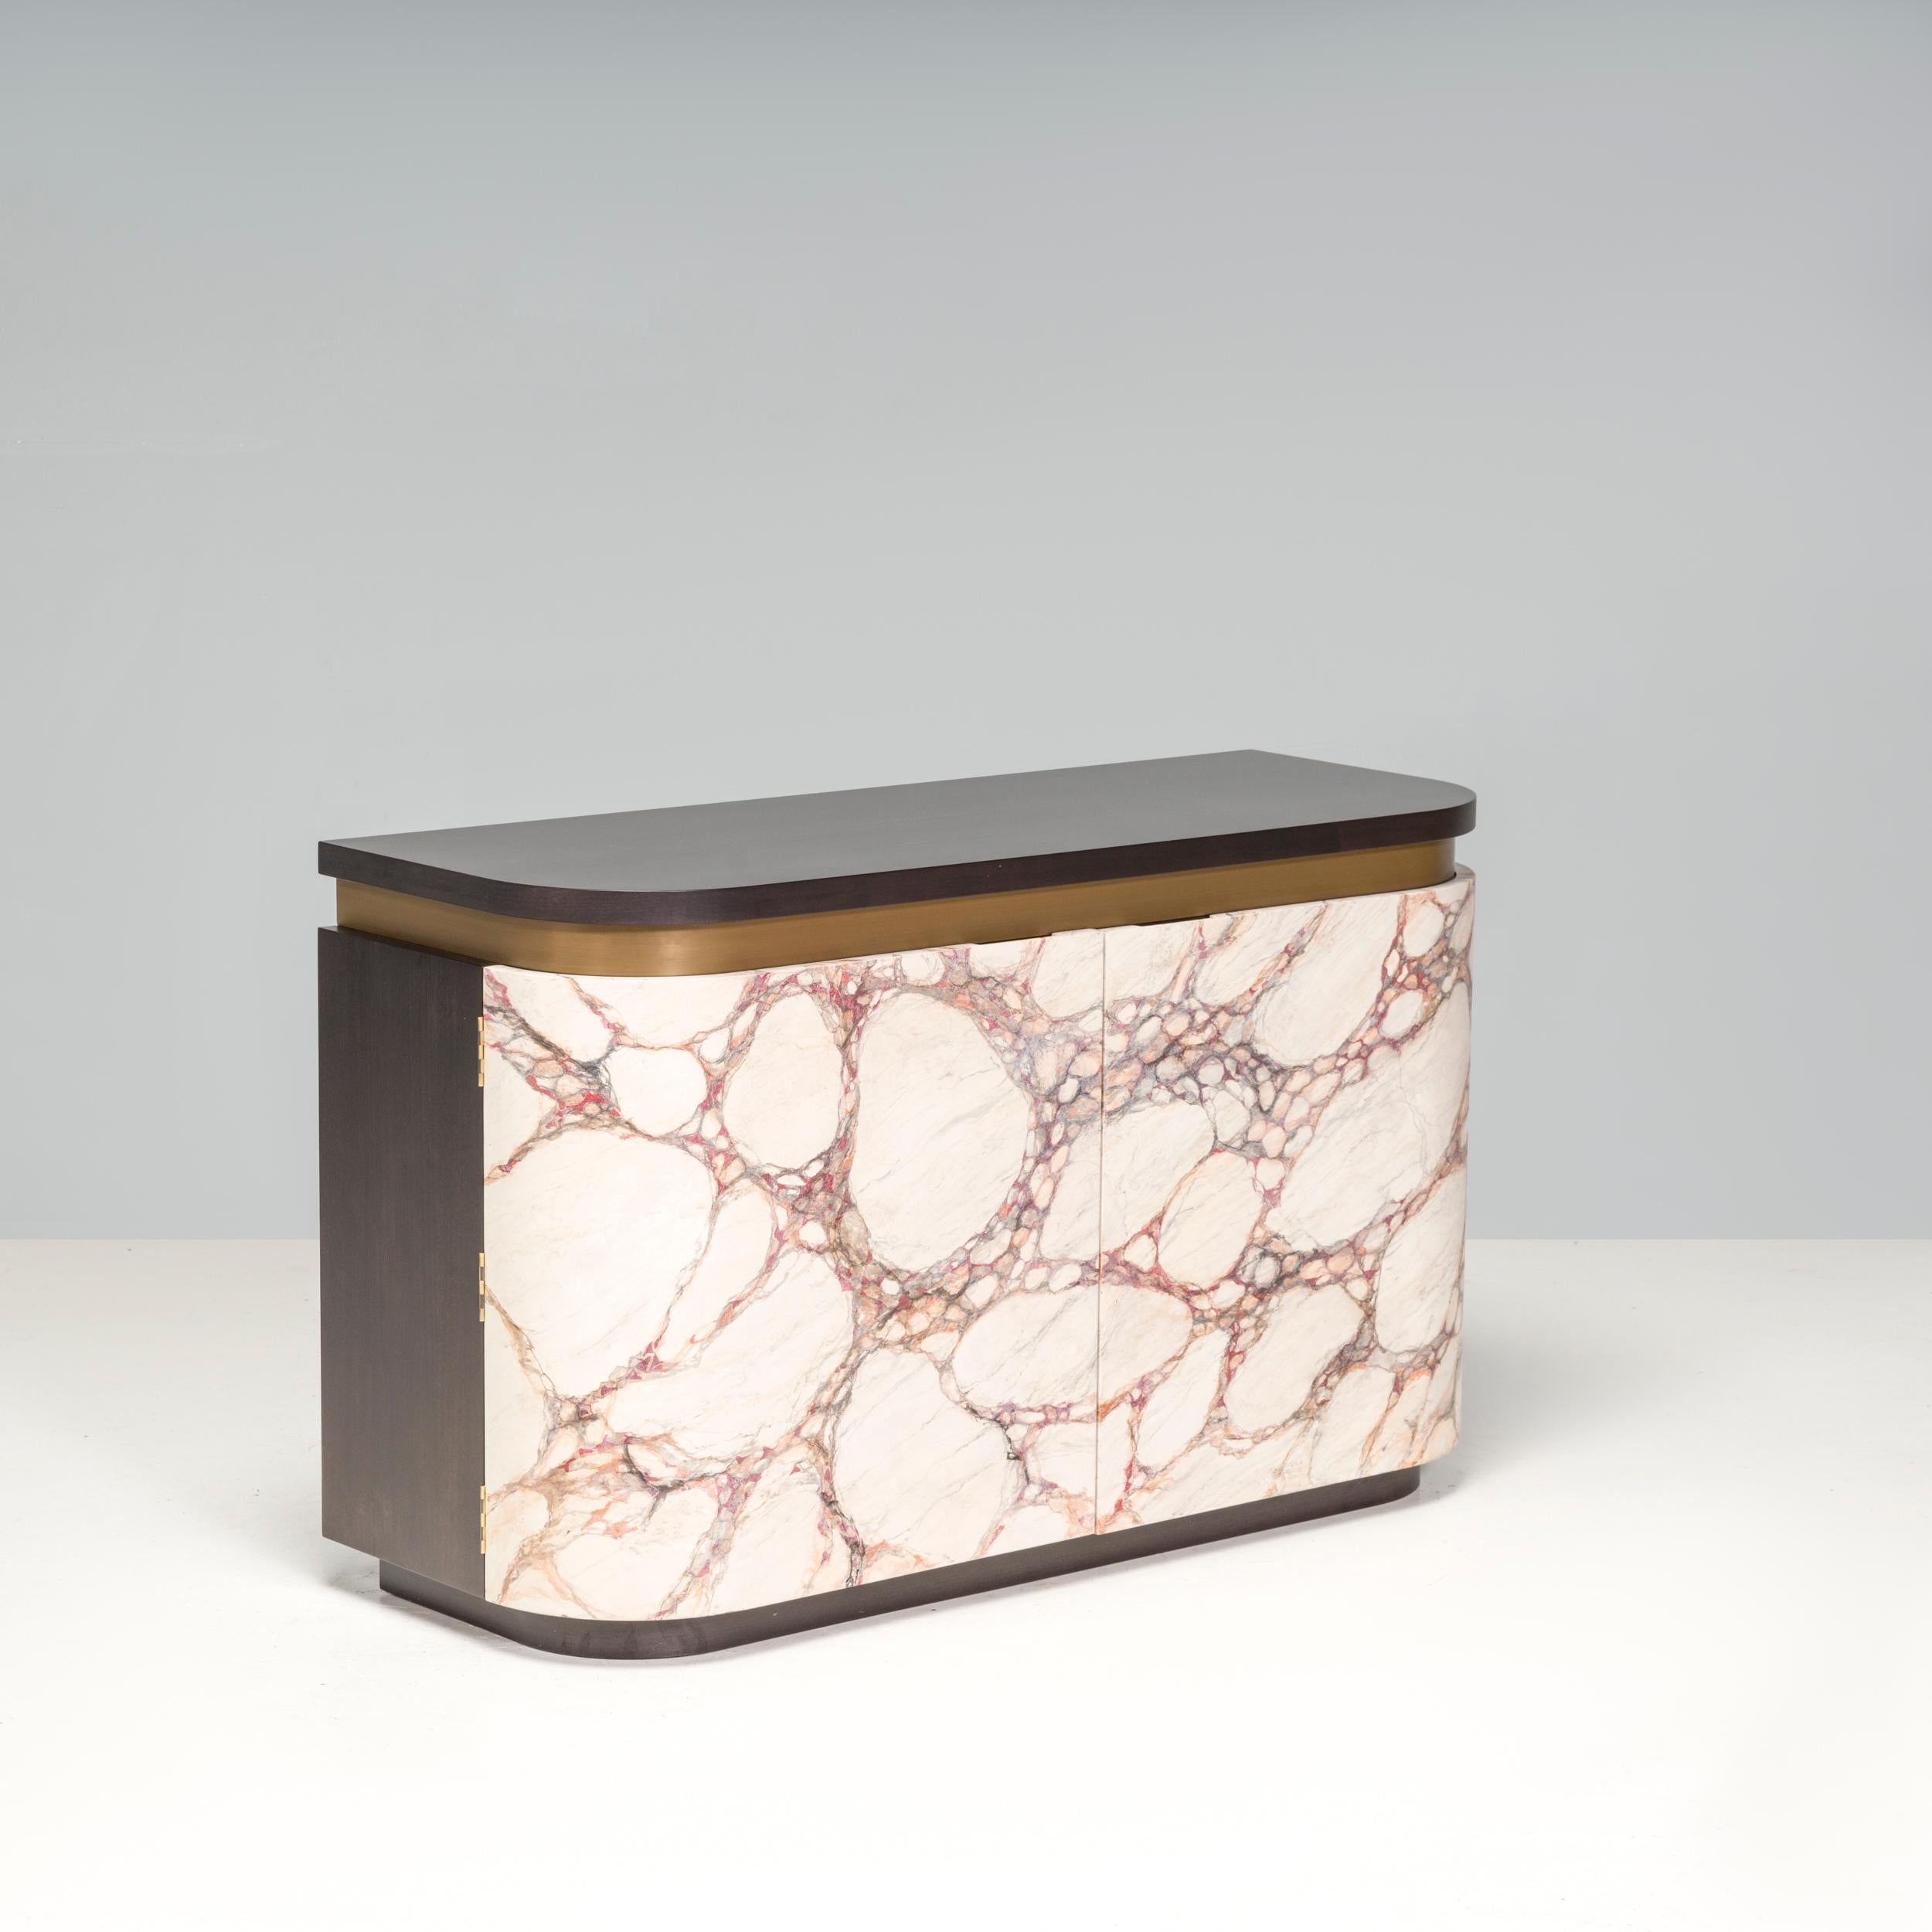 La planche d'appoint Bespoke Marble Effect présente un design épuré et moderne avec un mélange de matériaux. Les boiseries sombres contrastent magnifiquement avec les couleurs plus claires et plus vives des marbrures. Lorsqu'elles sont ouvertes, les